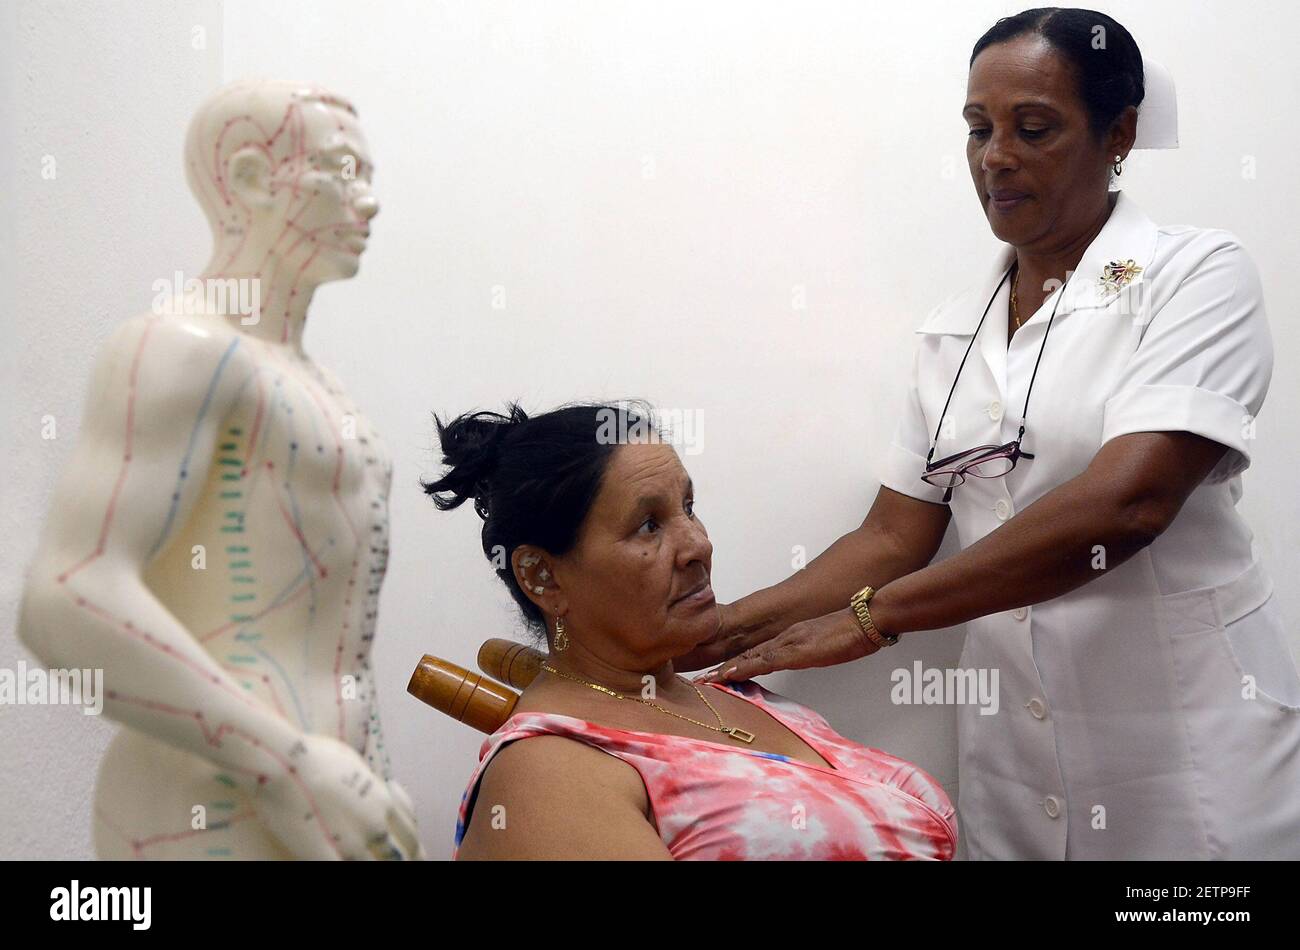 (170423) -- LA HABANA, 23 de abril de 2017 (Xinhua) -- la imagen tomada el 2 de marzo de 2017 muestra a una enfermera que aplica un tratamiento de medicina tradicional y natural a un paciente en el centro de atención primaria Camilo Cienfuegos en la Habana, Cuba. En los últimos 20 años, la medicina tradicional China (MCT) ha ido ganando terreno en Cuba como una nueva forma de aliviar las dolencias y tratar los dolores y las enfermedades crónicas. Los cubanos se han beneficiado desde la década de 1990 de la MCT, cuyas raíces antiguas se han profundizado en la conciencia de la isla sin necesidad de realizar campañas publicitarias. (Xinhua/Joaquín Hernández) (ma) (fnc) (Foto de Xinh Foto de stock